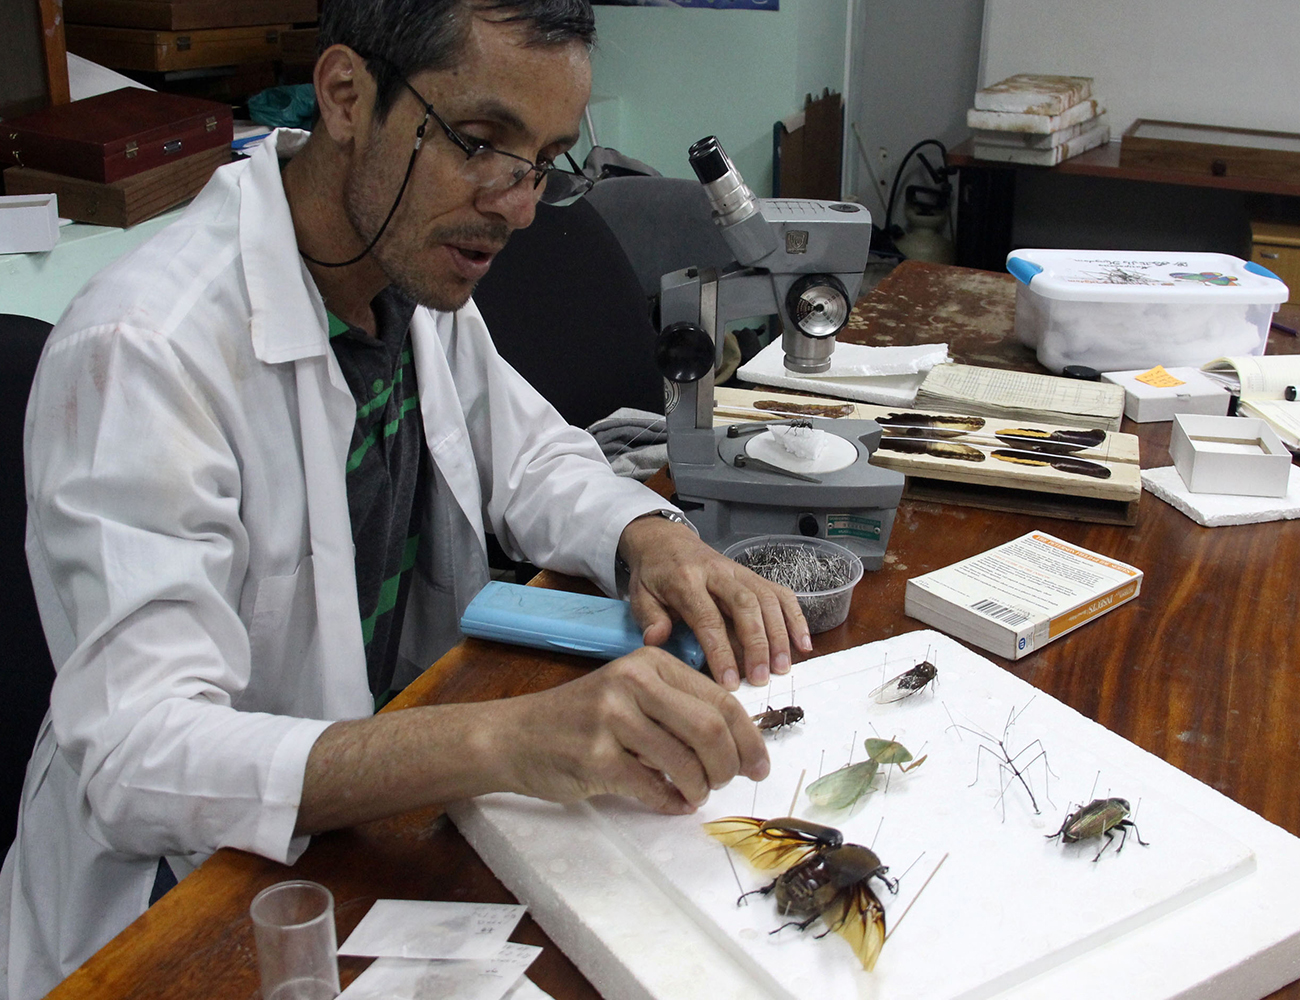 German Vega, realiza trabajos de investigación, curaduría y conservación en entomología (insectos)